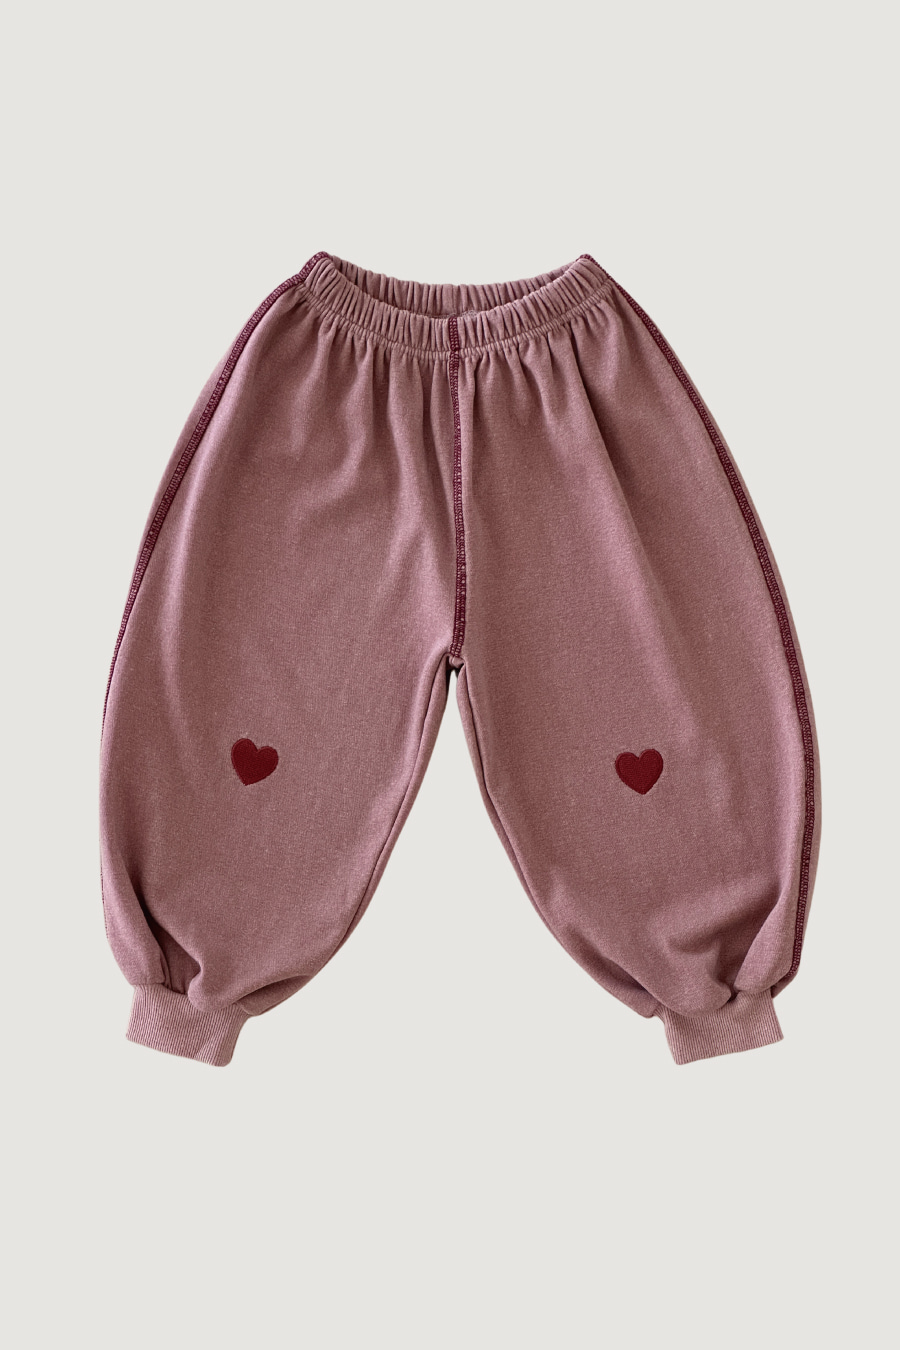 LOVE loose pants (Indie pink)